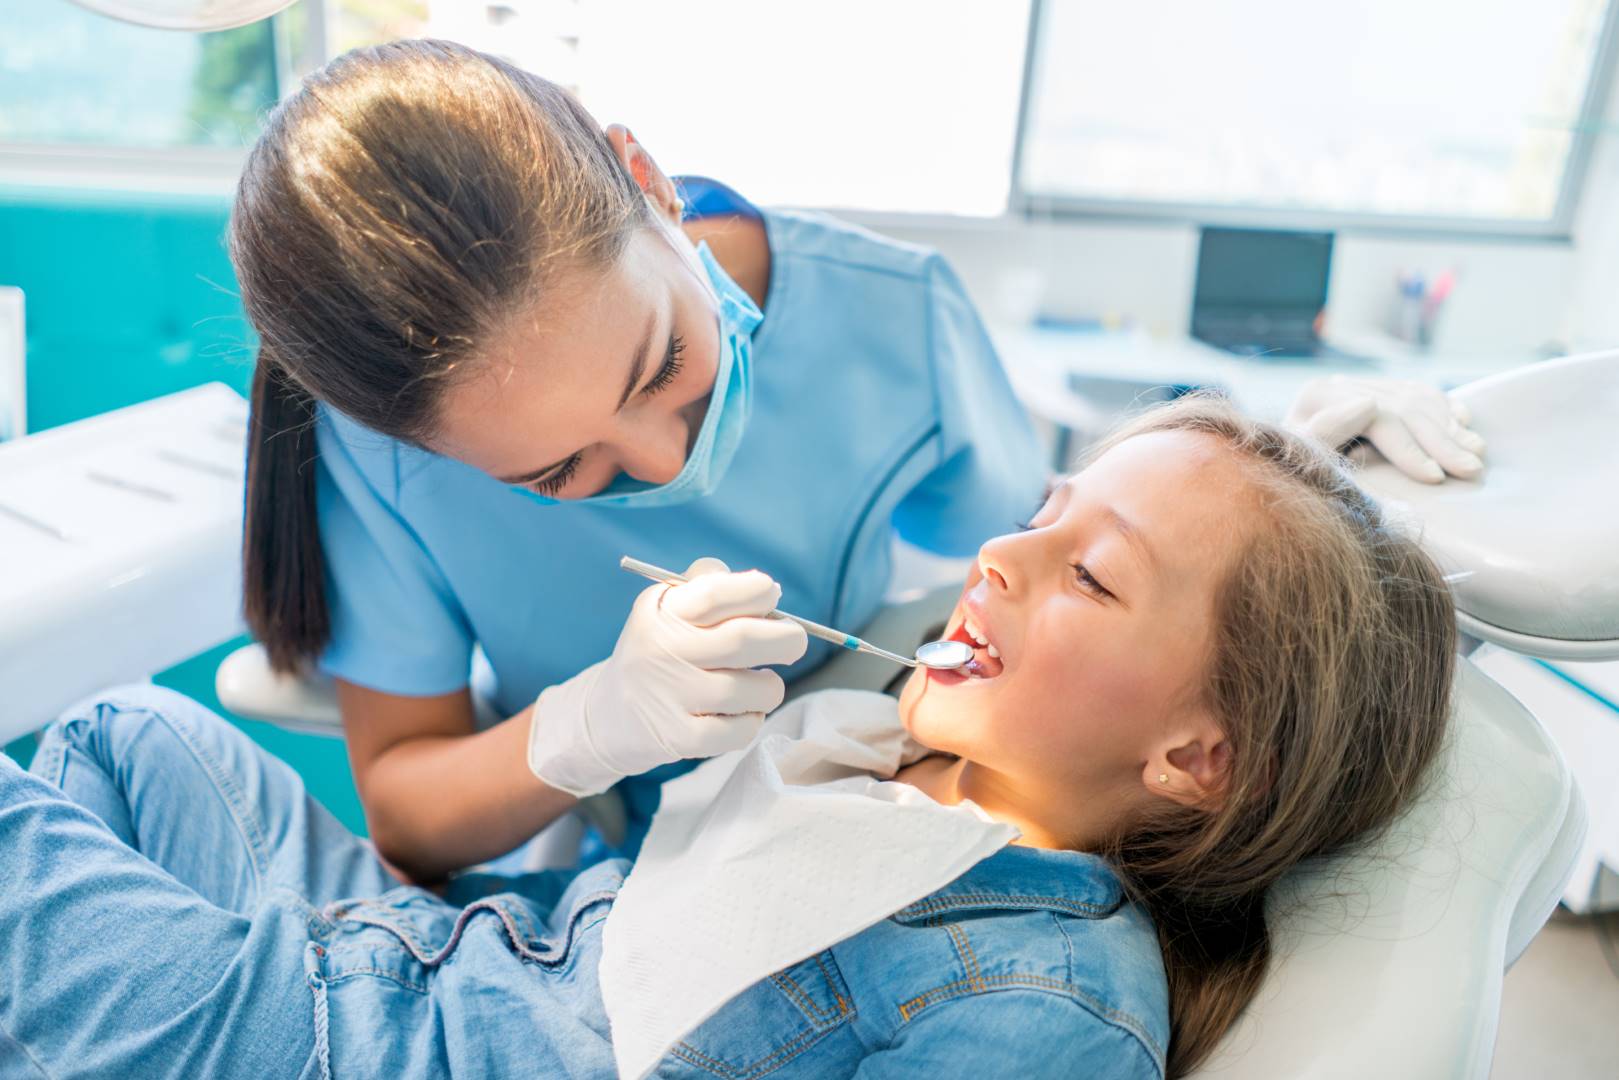 Çocuk Diş Hekimliği (Pedodonti) | DENTAGLOBAL | Ağız, Diş Ve Çene  Cerrahisi, Diş Implantı, Estetik Diş Hekimliği, Diş Beyazlatma, Ortodonti,  Diş Eti Tedavi, Çocuk Diş, Kanal Tedavisi, Dolgu, Diş Protezleri, Lazer,  Röntgen,